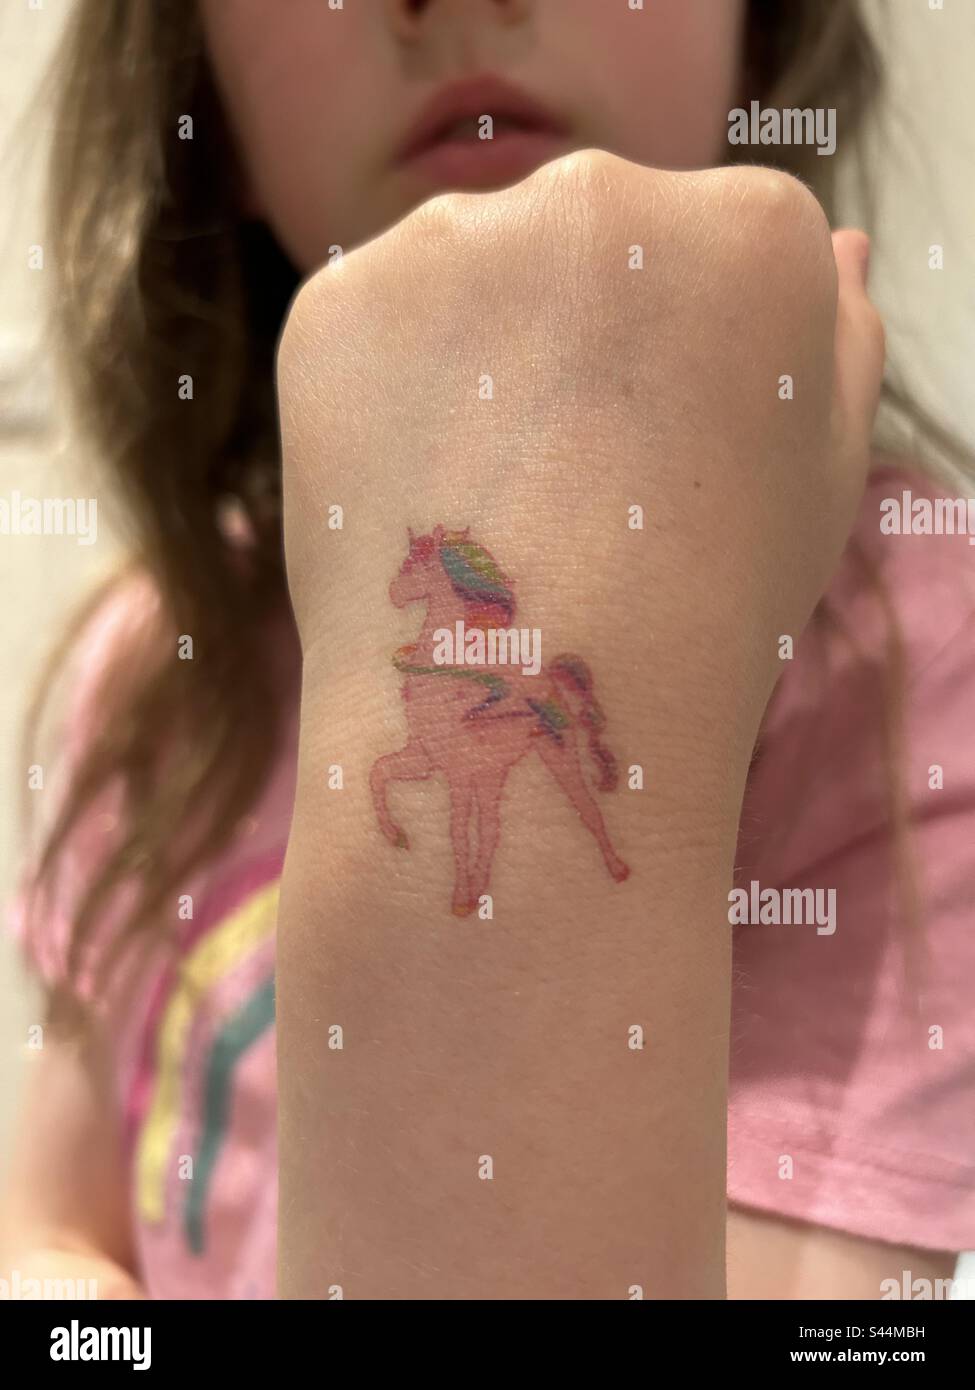 Tatouage temporaire d'une licorne sur un poignet de fille Banque D'Images